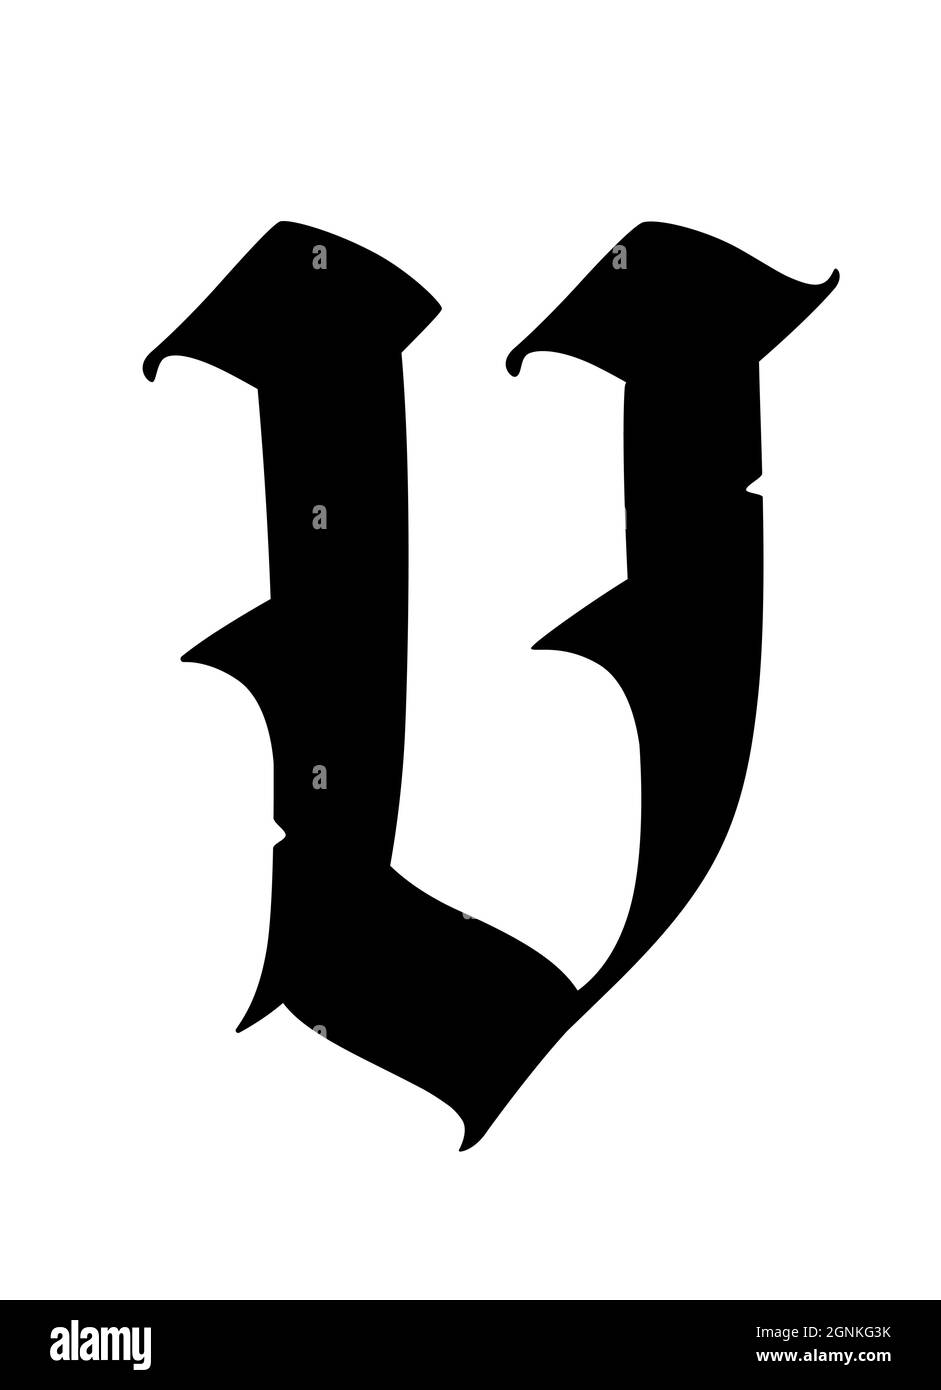 Lettre v dans le style gothique. Vecteur. Alphabet. Le symbole est isolé sur un fond blanc. Calligraphie et lettrage. Lettre latine médiévale. Logo f Illustration de Vecteur